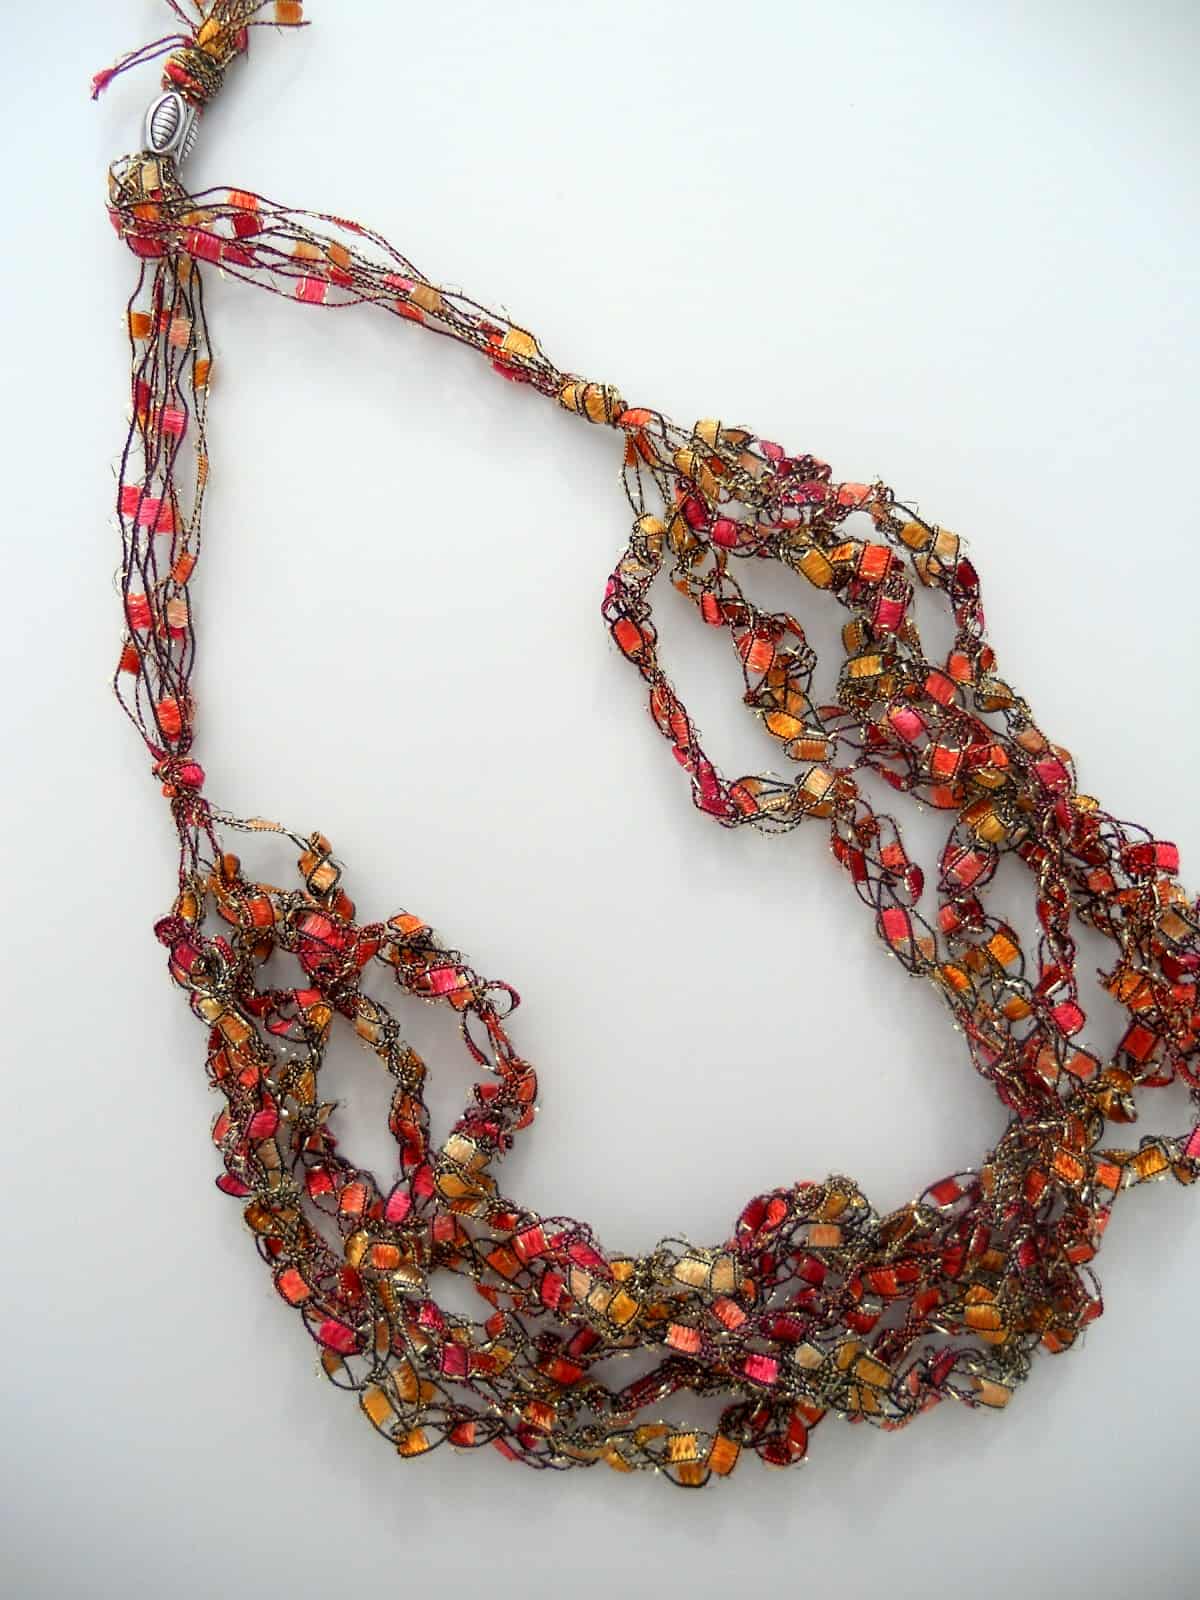 Trellis yarn necklace